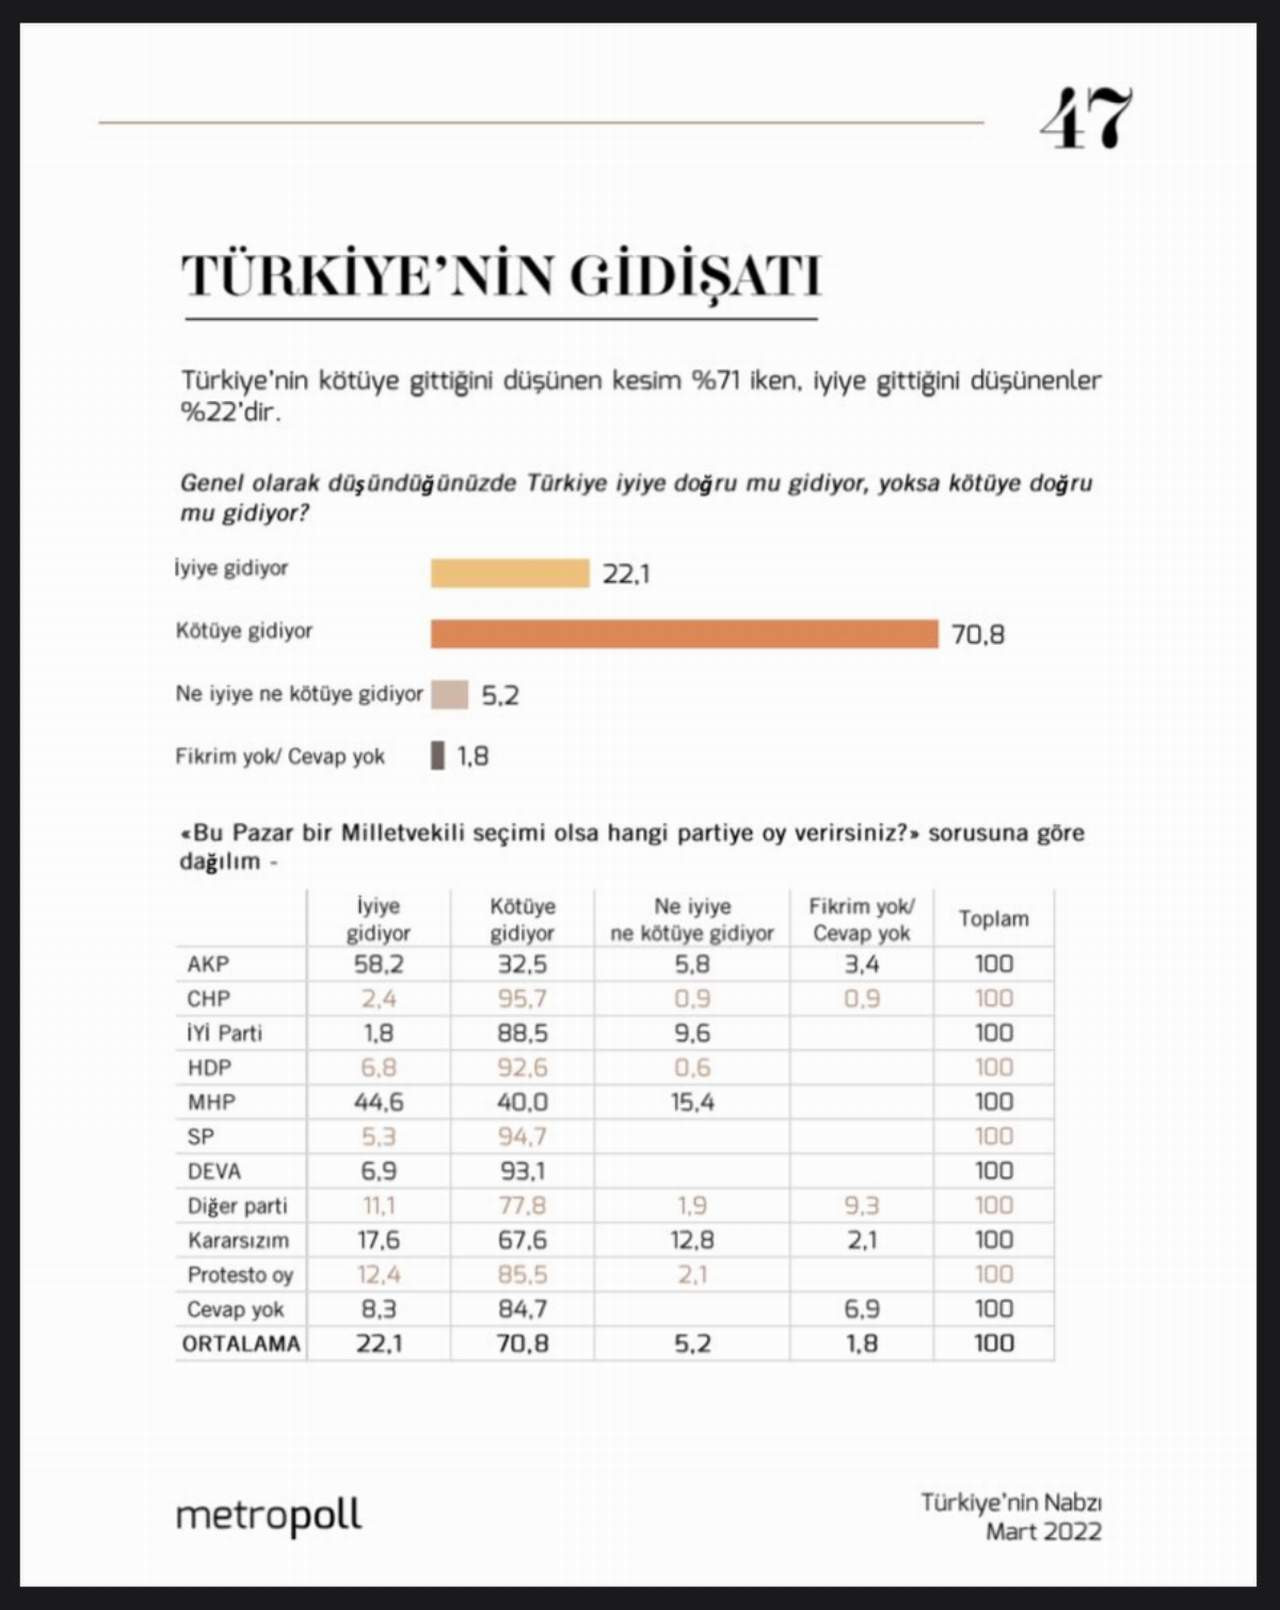 Metropoll Araştırma Türkiye'nin Nabzı Mart 2022 anketi sonuçları